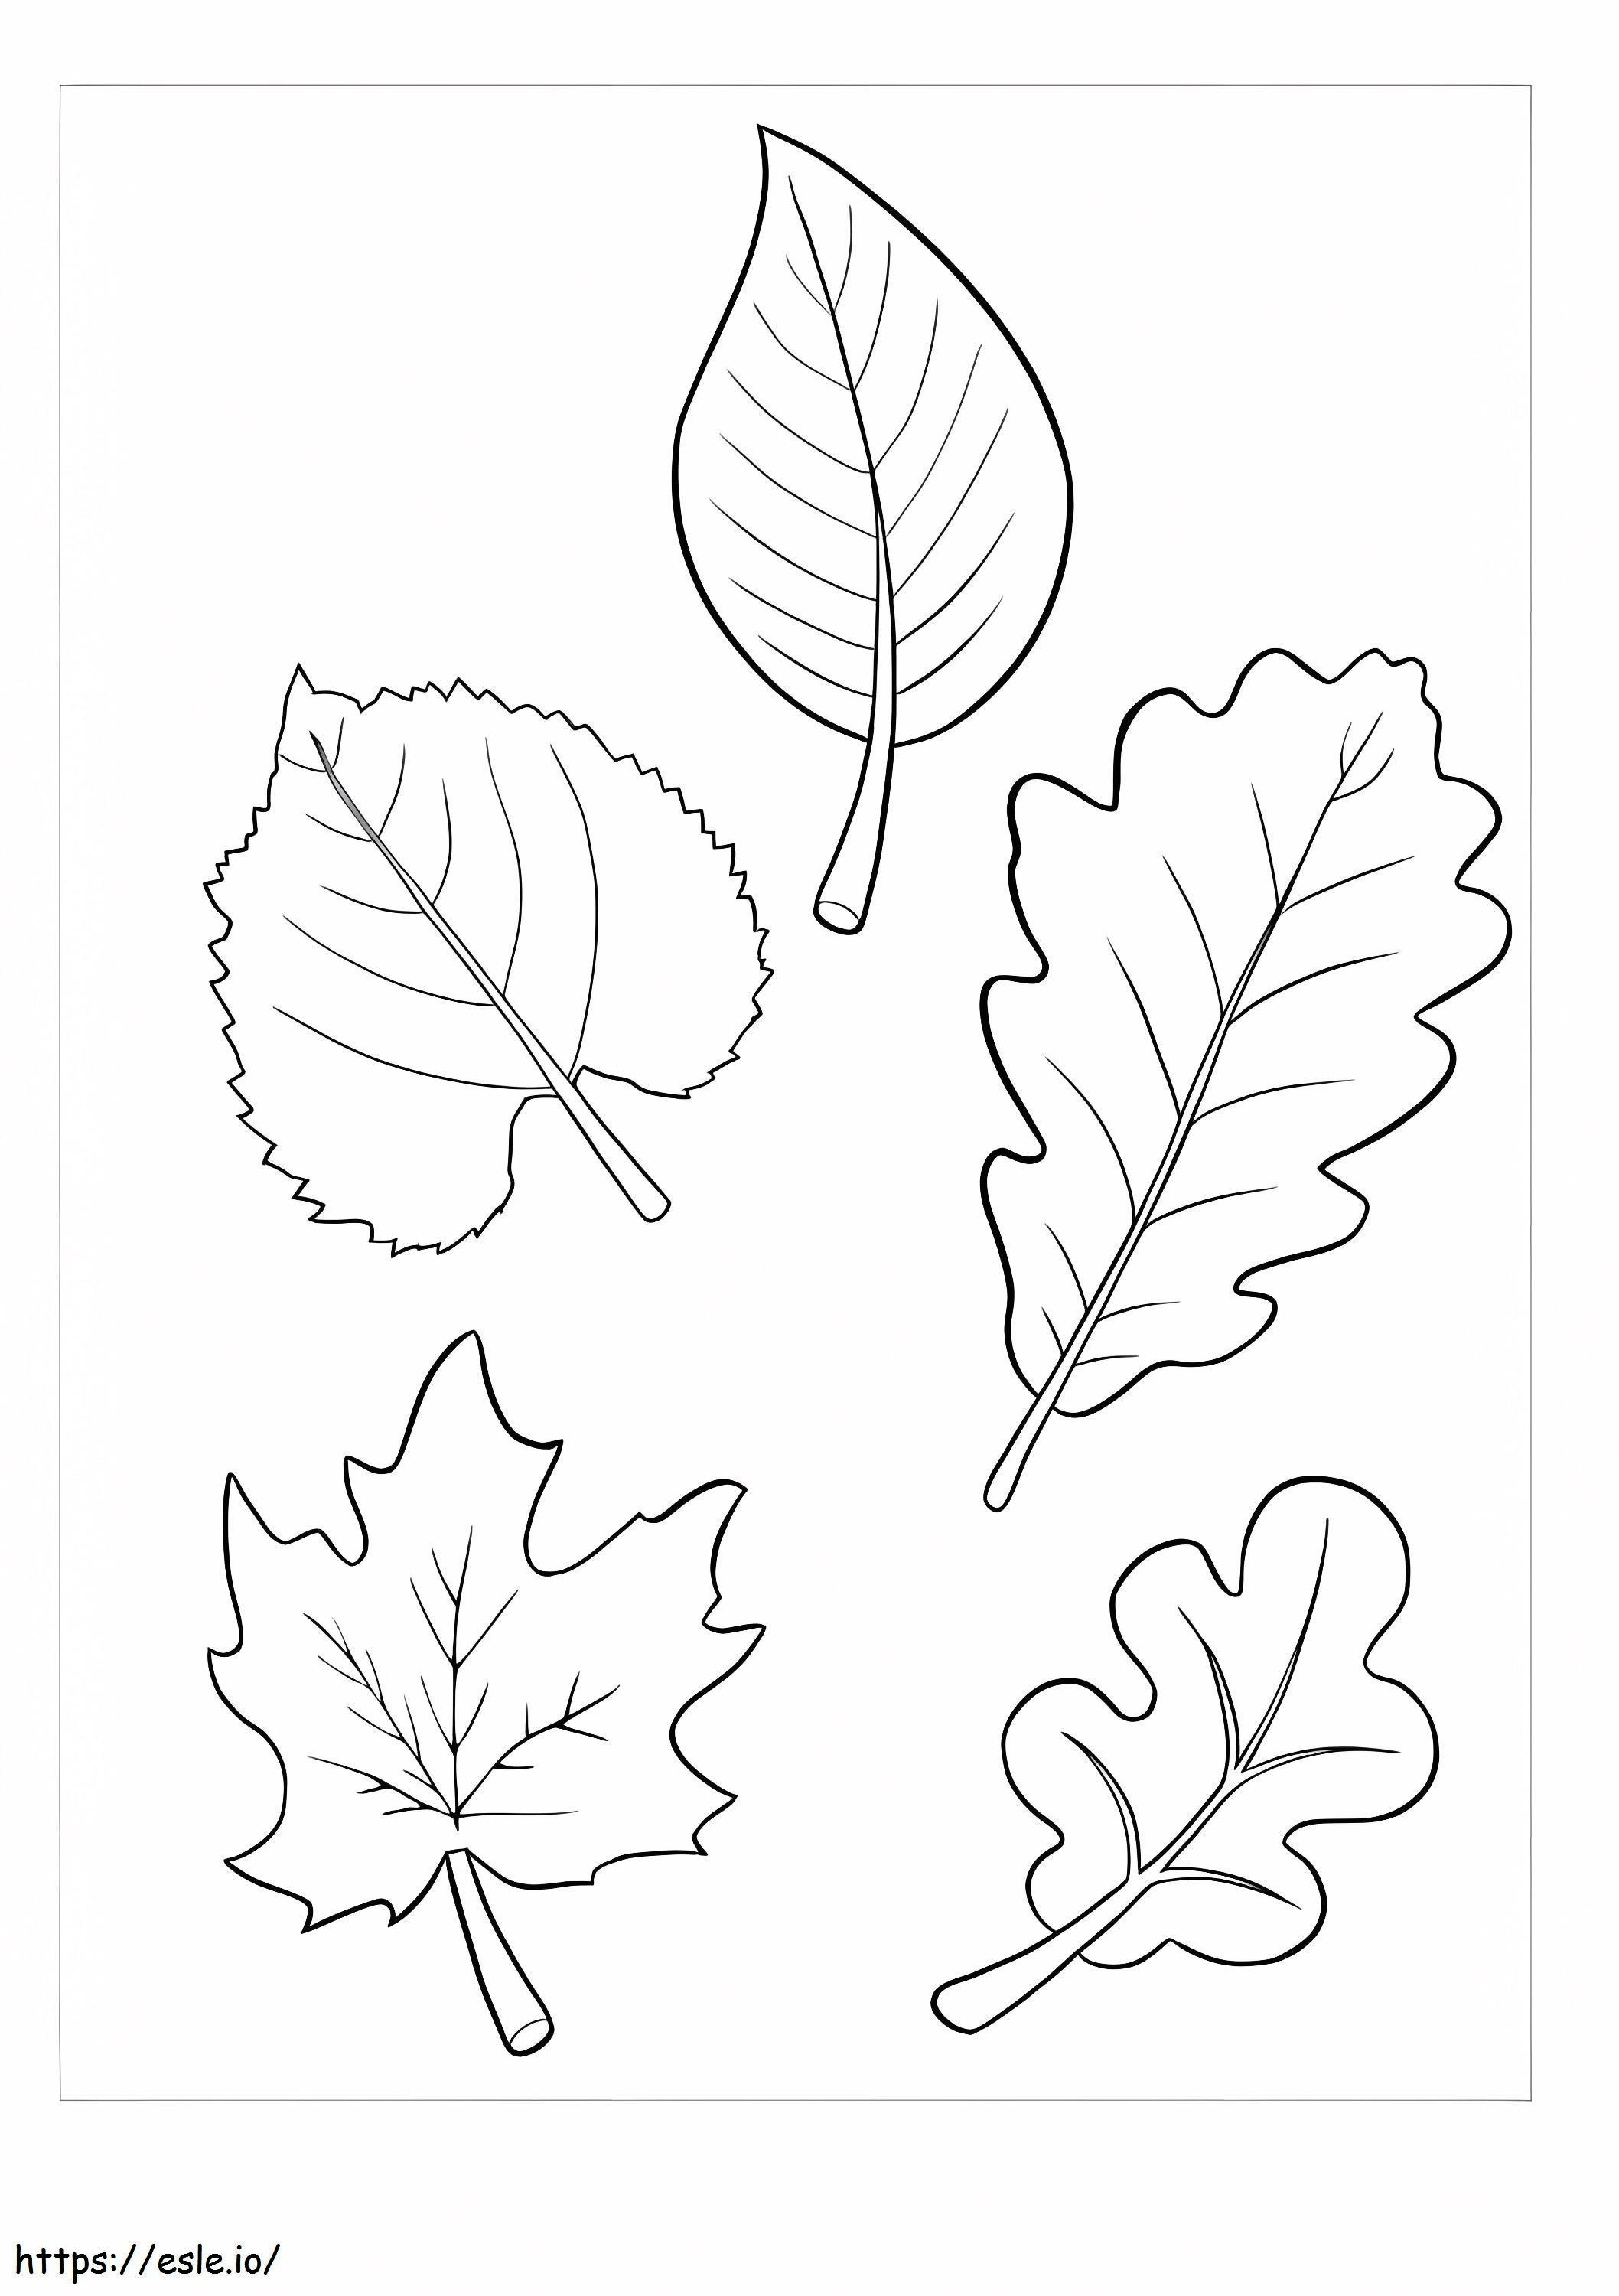 Fünf Blätter ausmalbilder